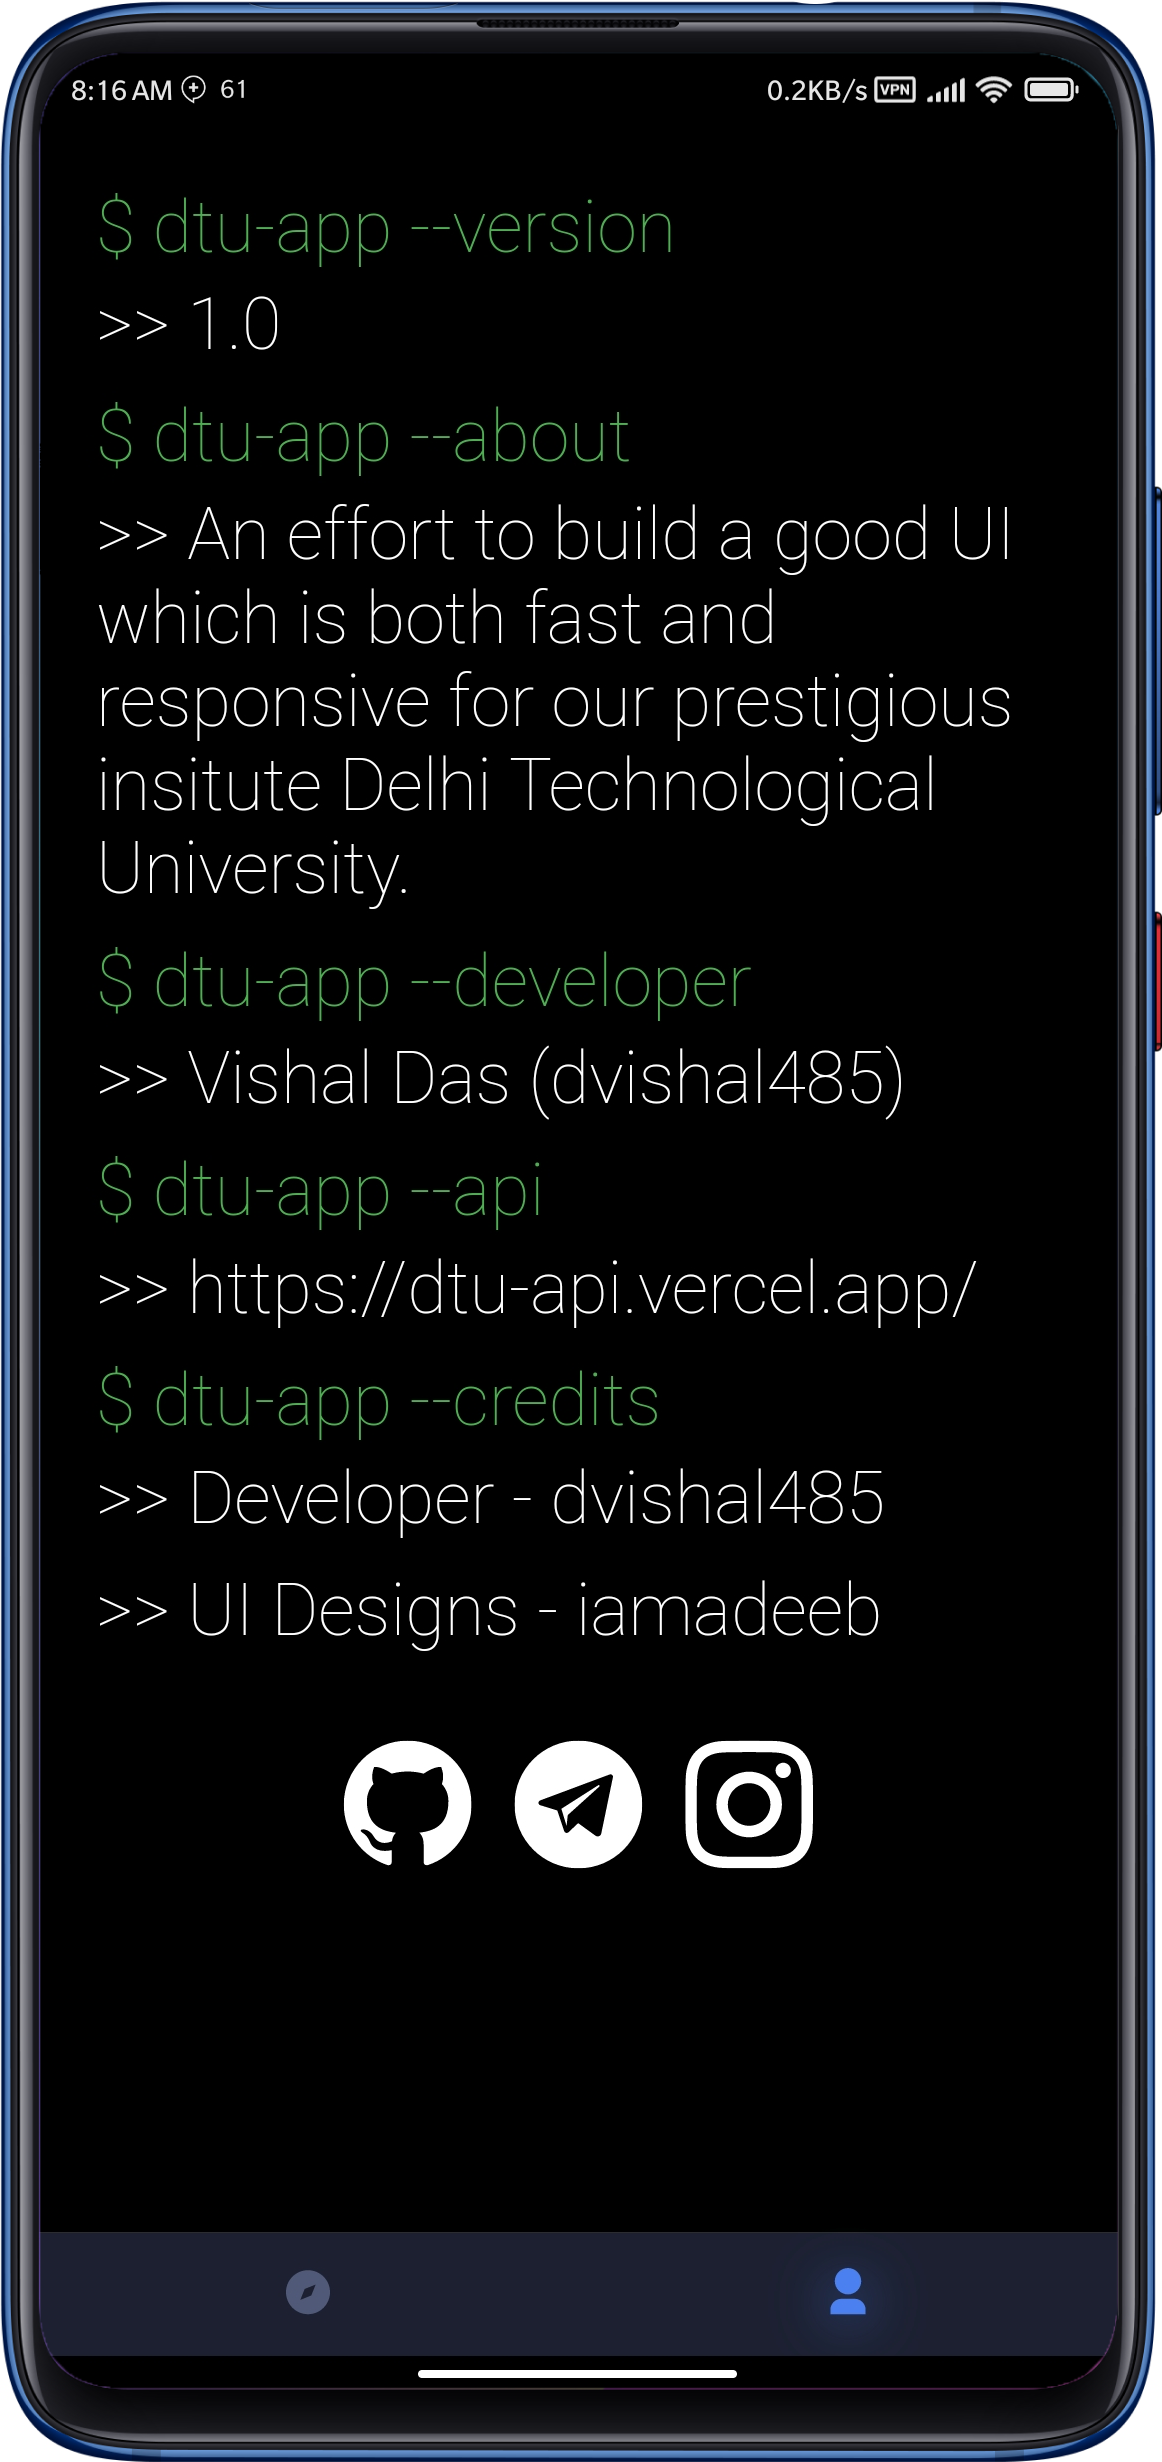 Delhi Technological University unofficial website client app